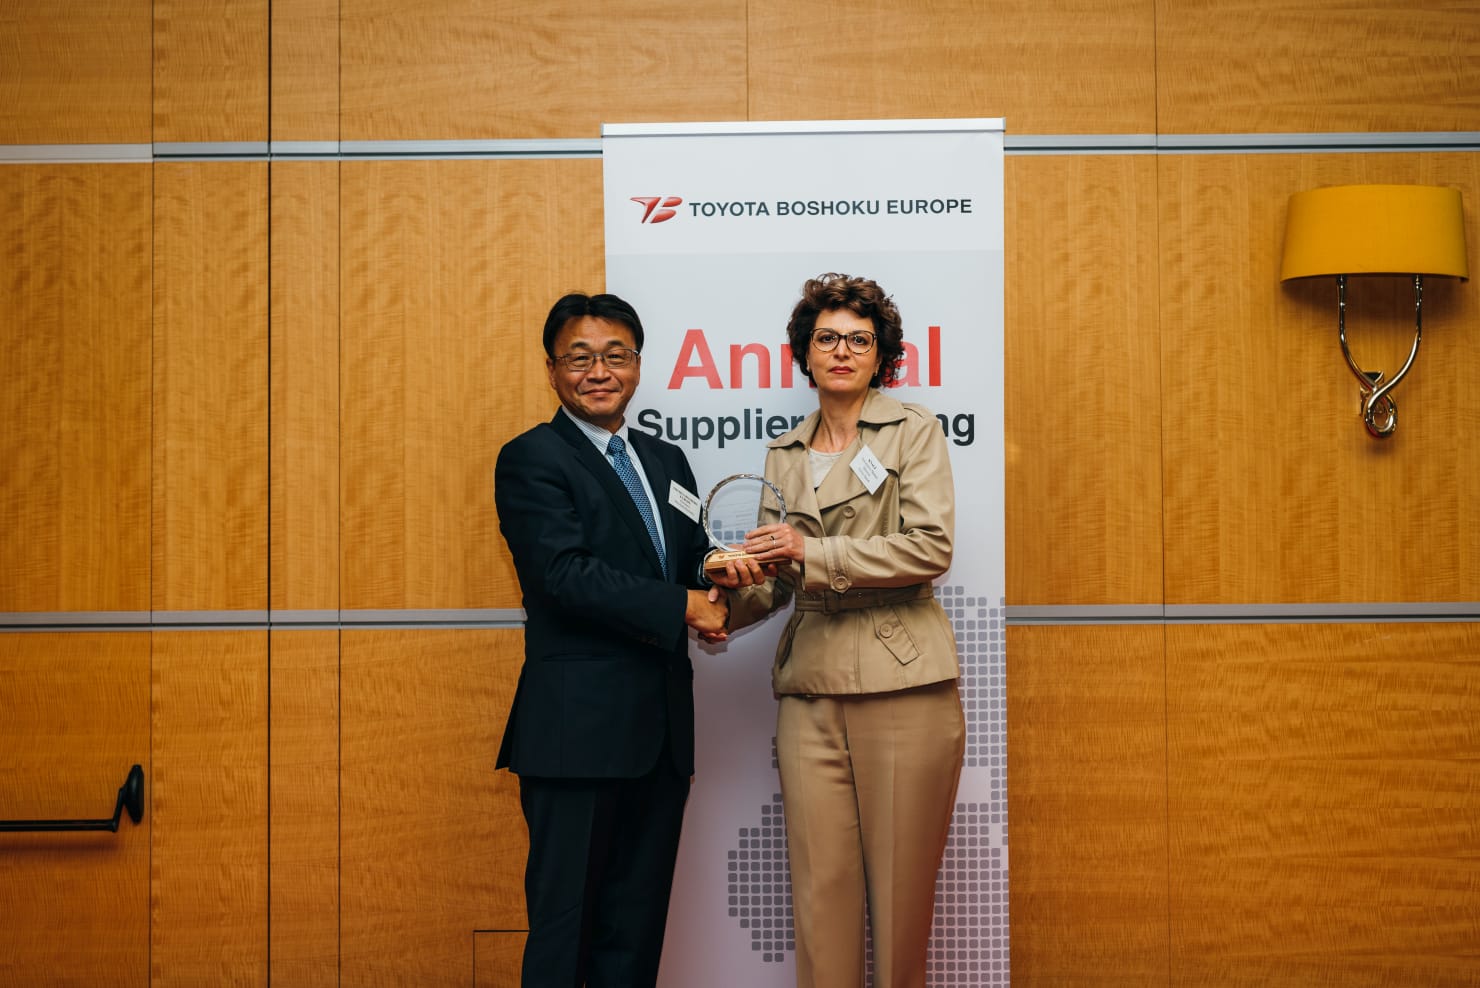 Ceremonia wręczenia nagród dla najlepszych europejskich dostawców Toyota Boshoku w Zaventem.